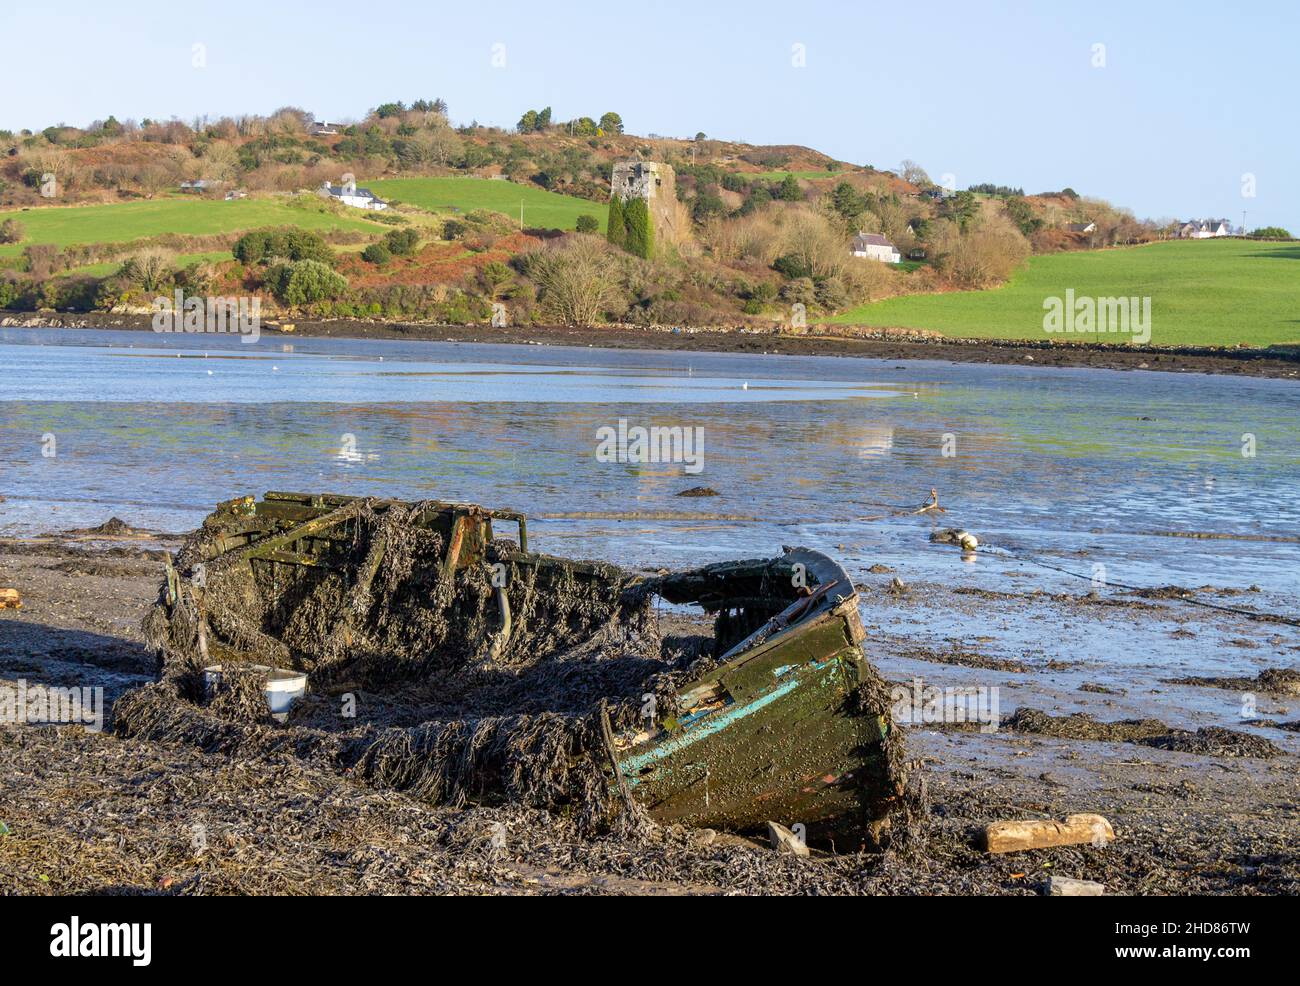 Estuario marea bassa marea con castello in rovina o torre fortificata. Cork occidentale Irlanda Foto Stock